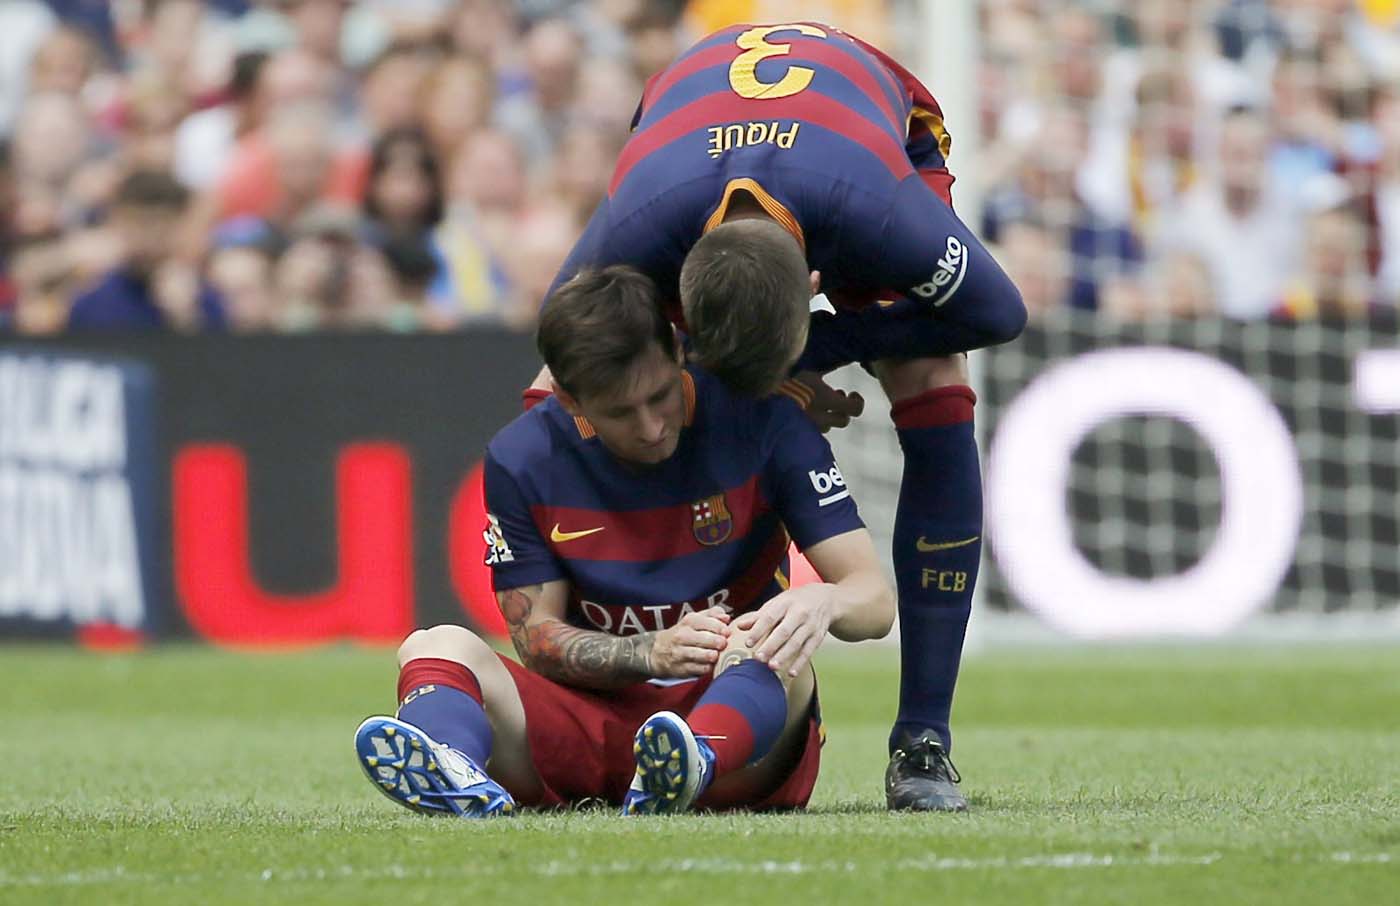 El Barça respalda a Messi y considera que el jugador ya regularizó situación